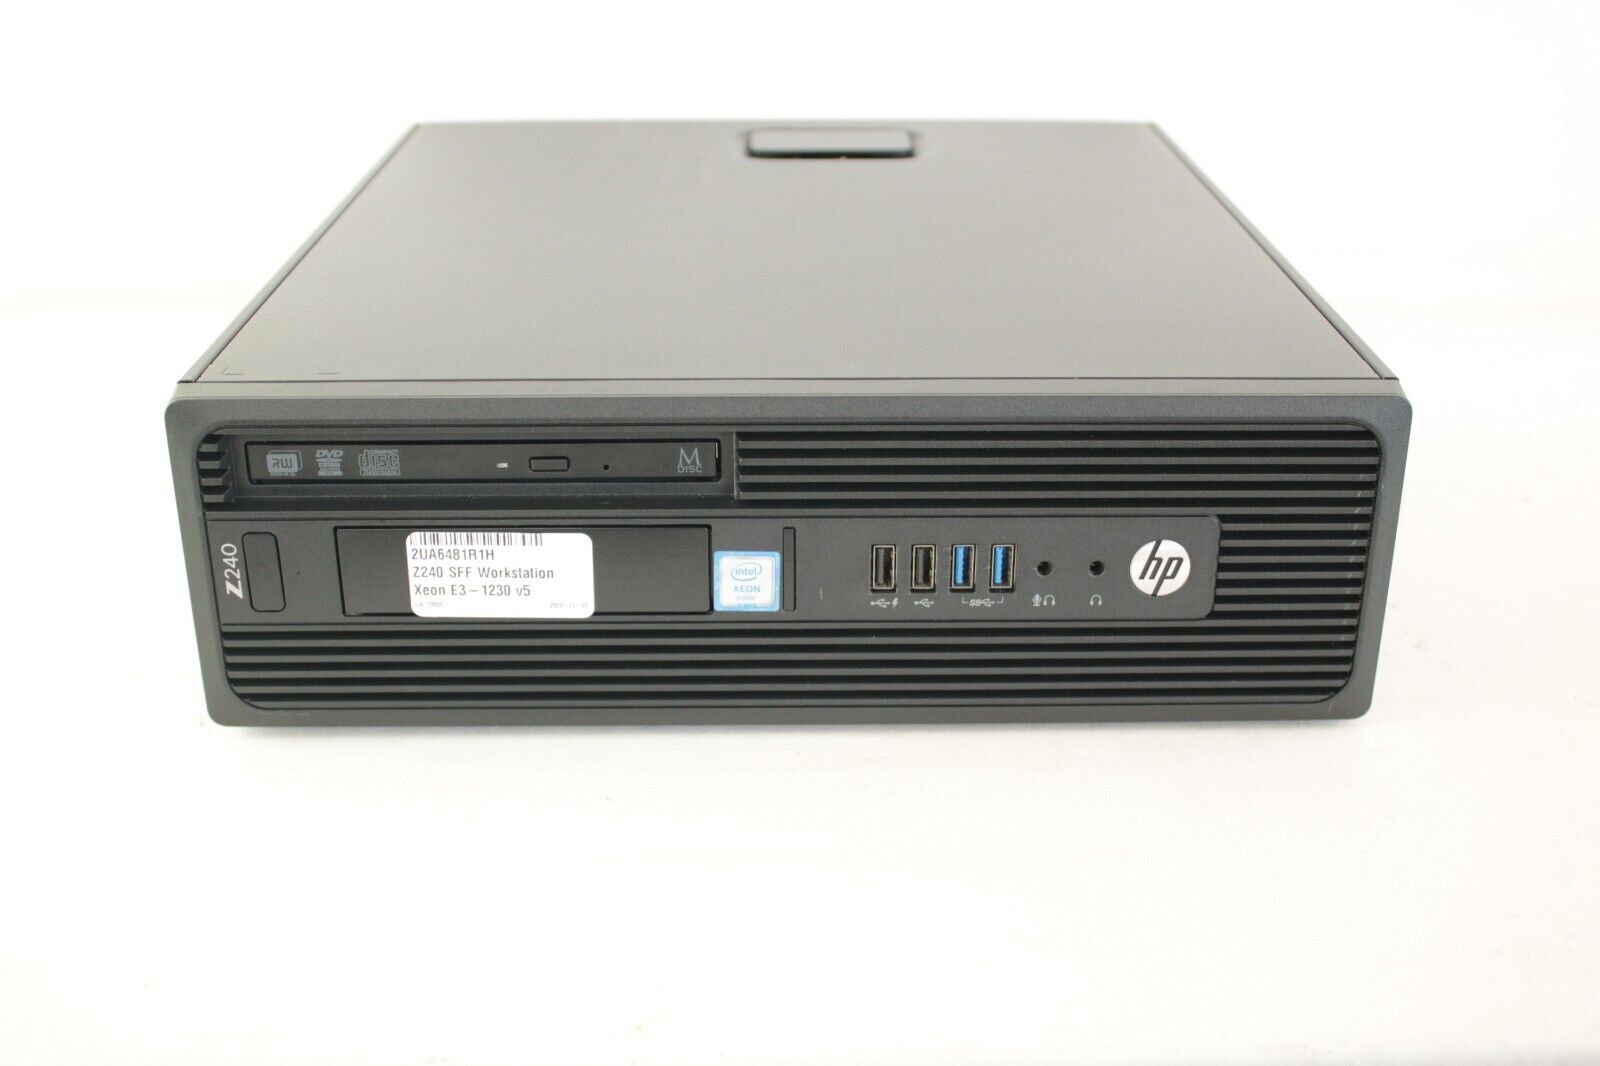 HP Z240 SFF Workstation w/ Xeon E3-1230 v5 @3.4GHz - 16GB RAM - No HDD/SSD or OS